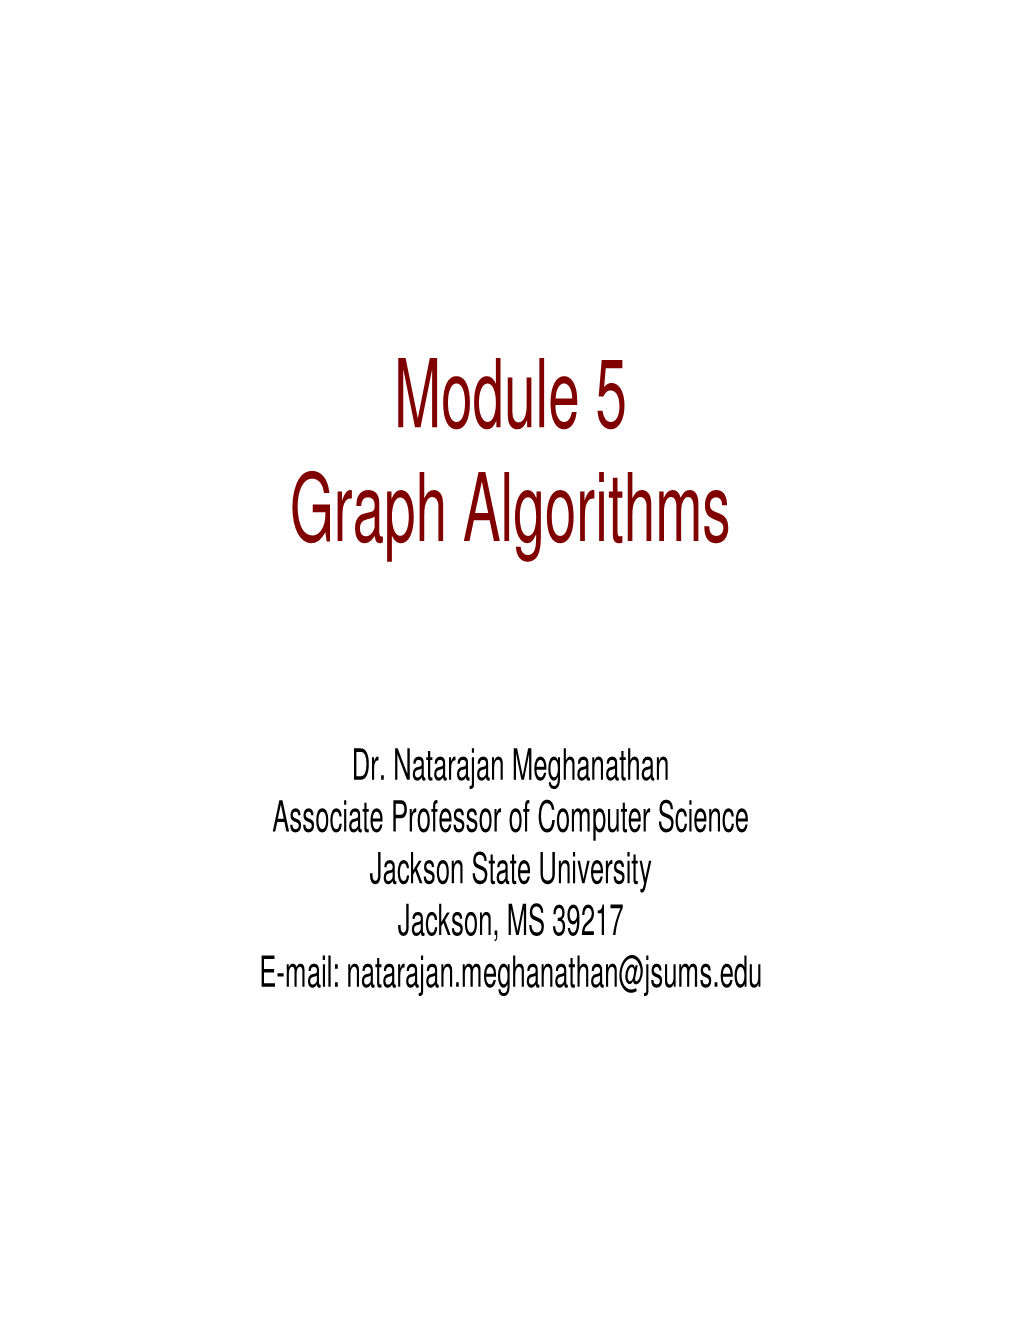 Module 5 Graph Algorithms